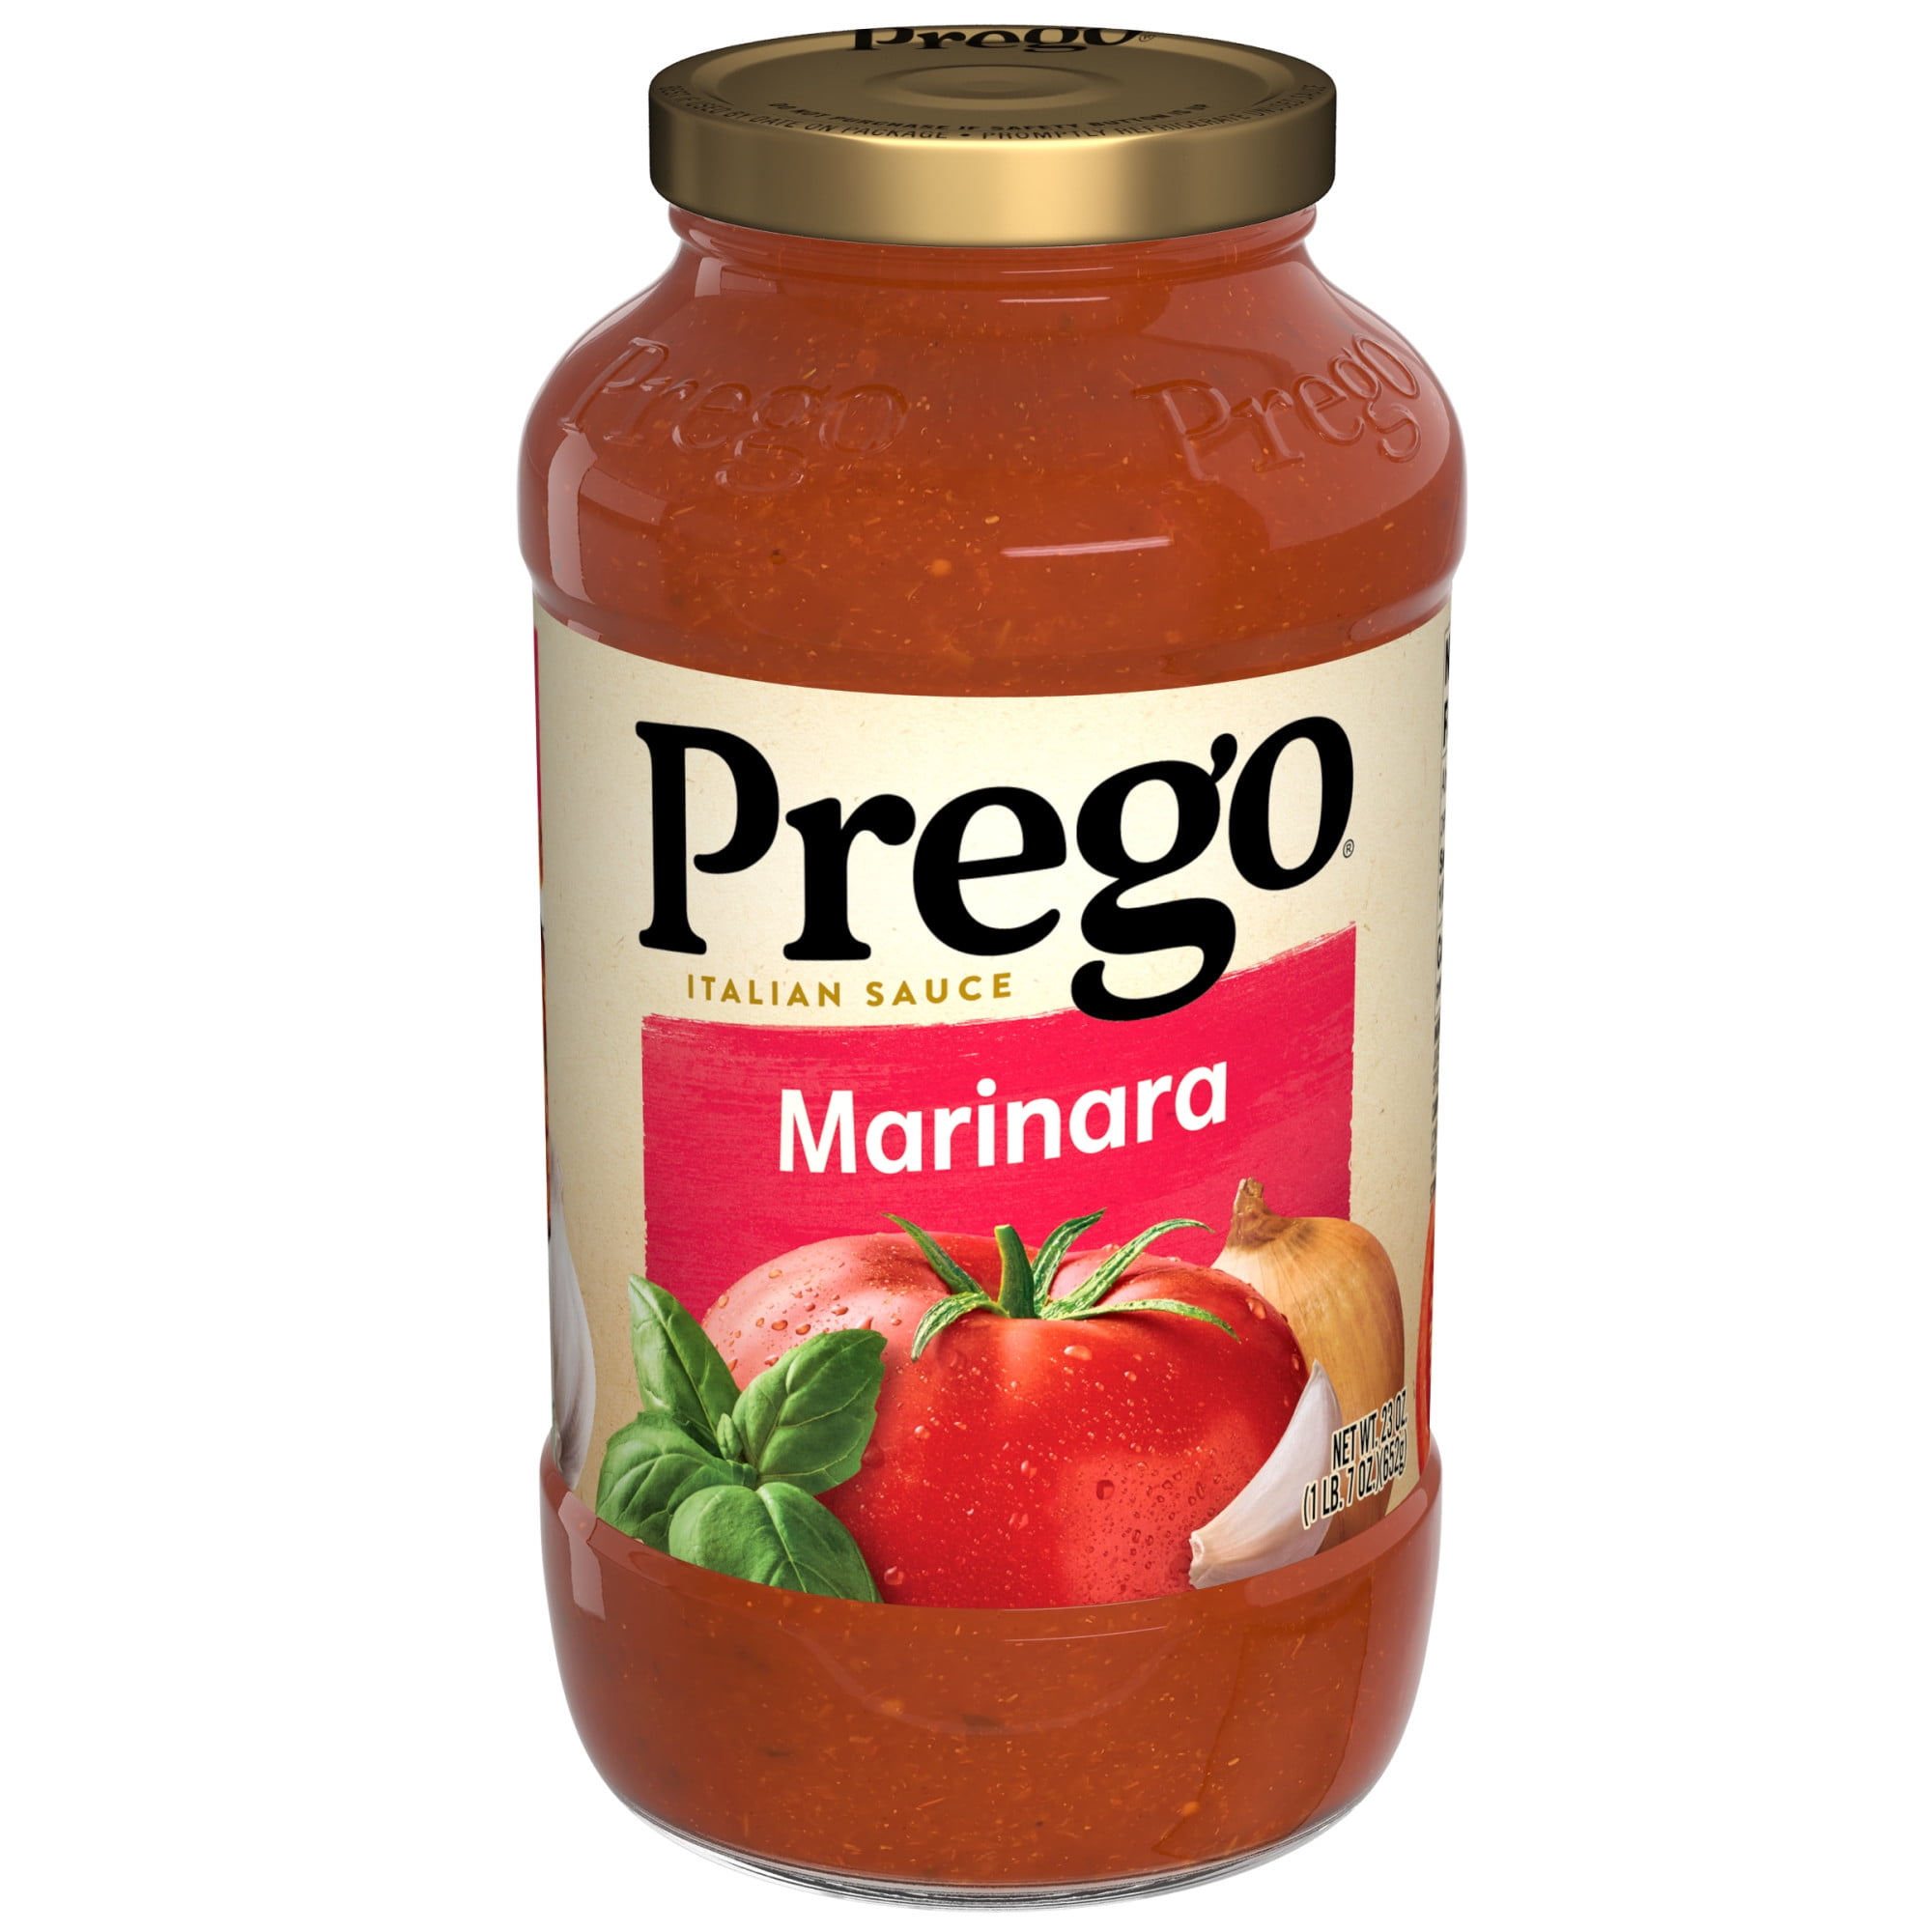 Prego Marinara Spaghetti Sauce, 23 Oz Jar